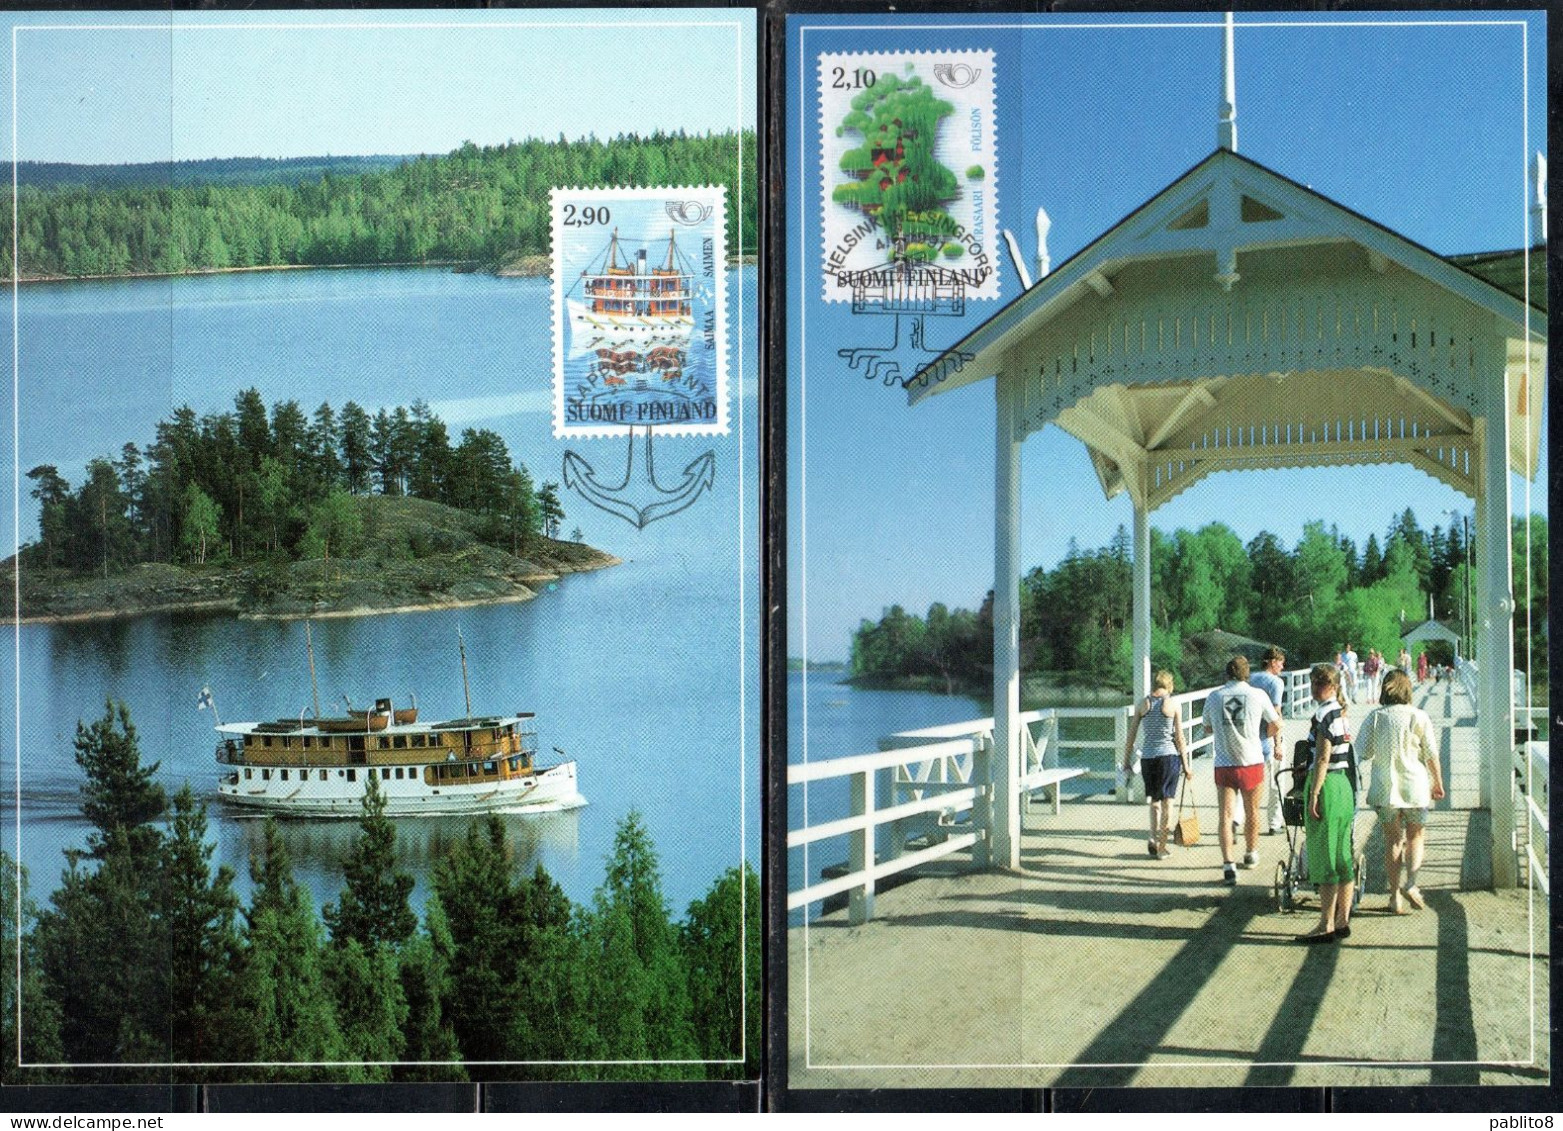 SUOMI FINLAND FINLANDIA FINLANDE 1991 TOURISM COMPLETE SET SERIE COMPLETA MAXI MAXIMUM CARD - Cartoline Maximum